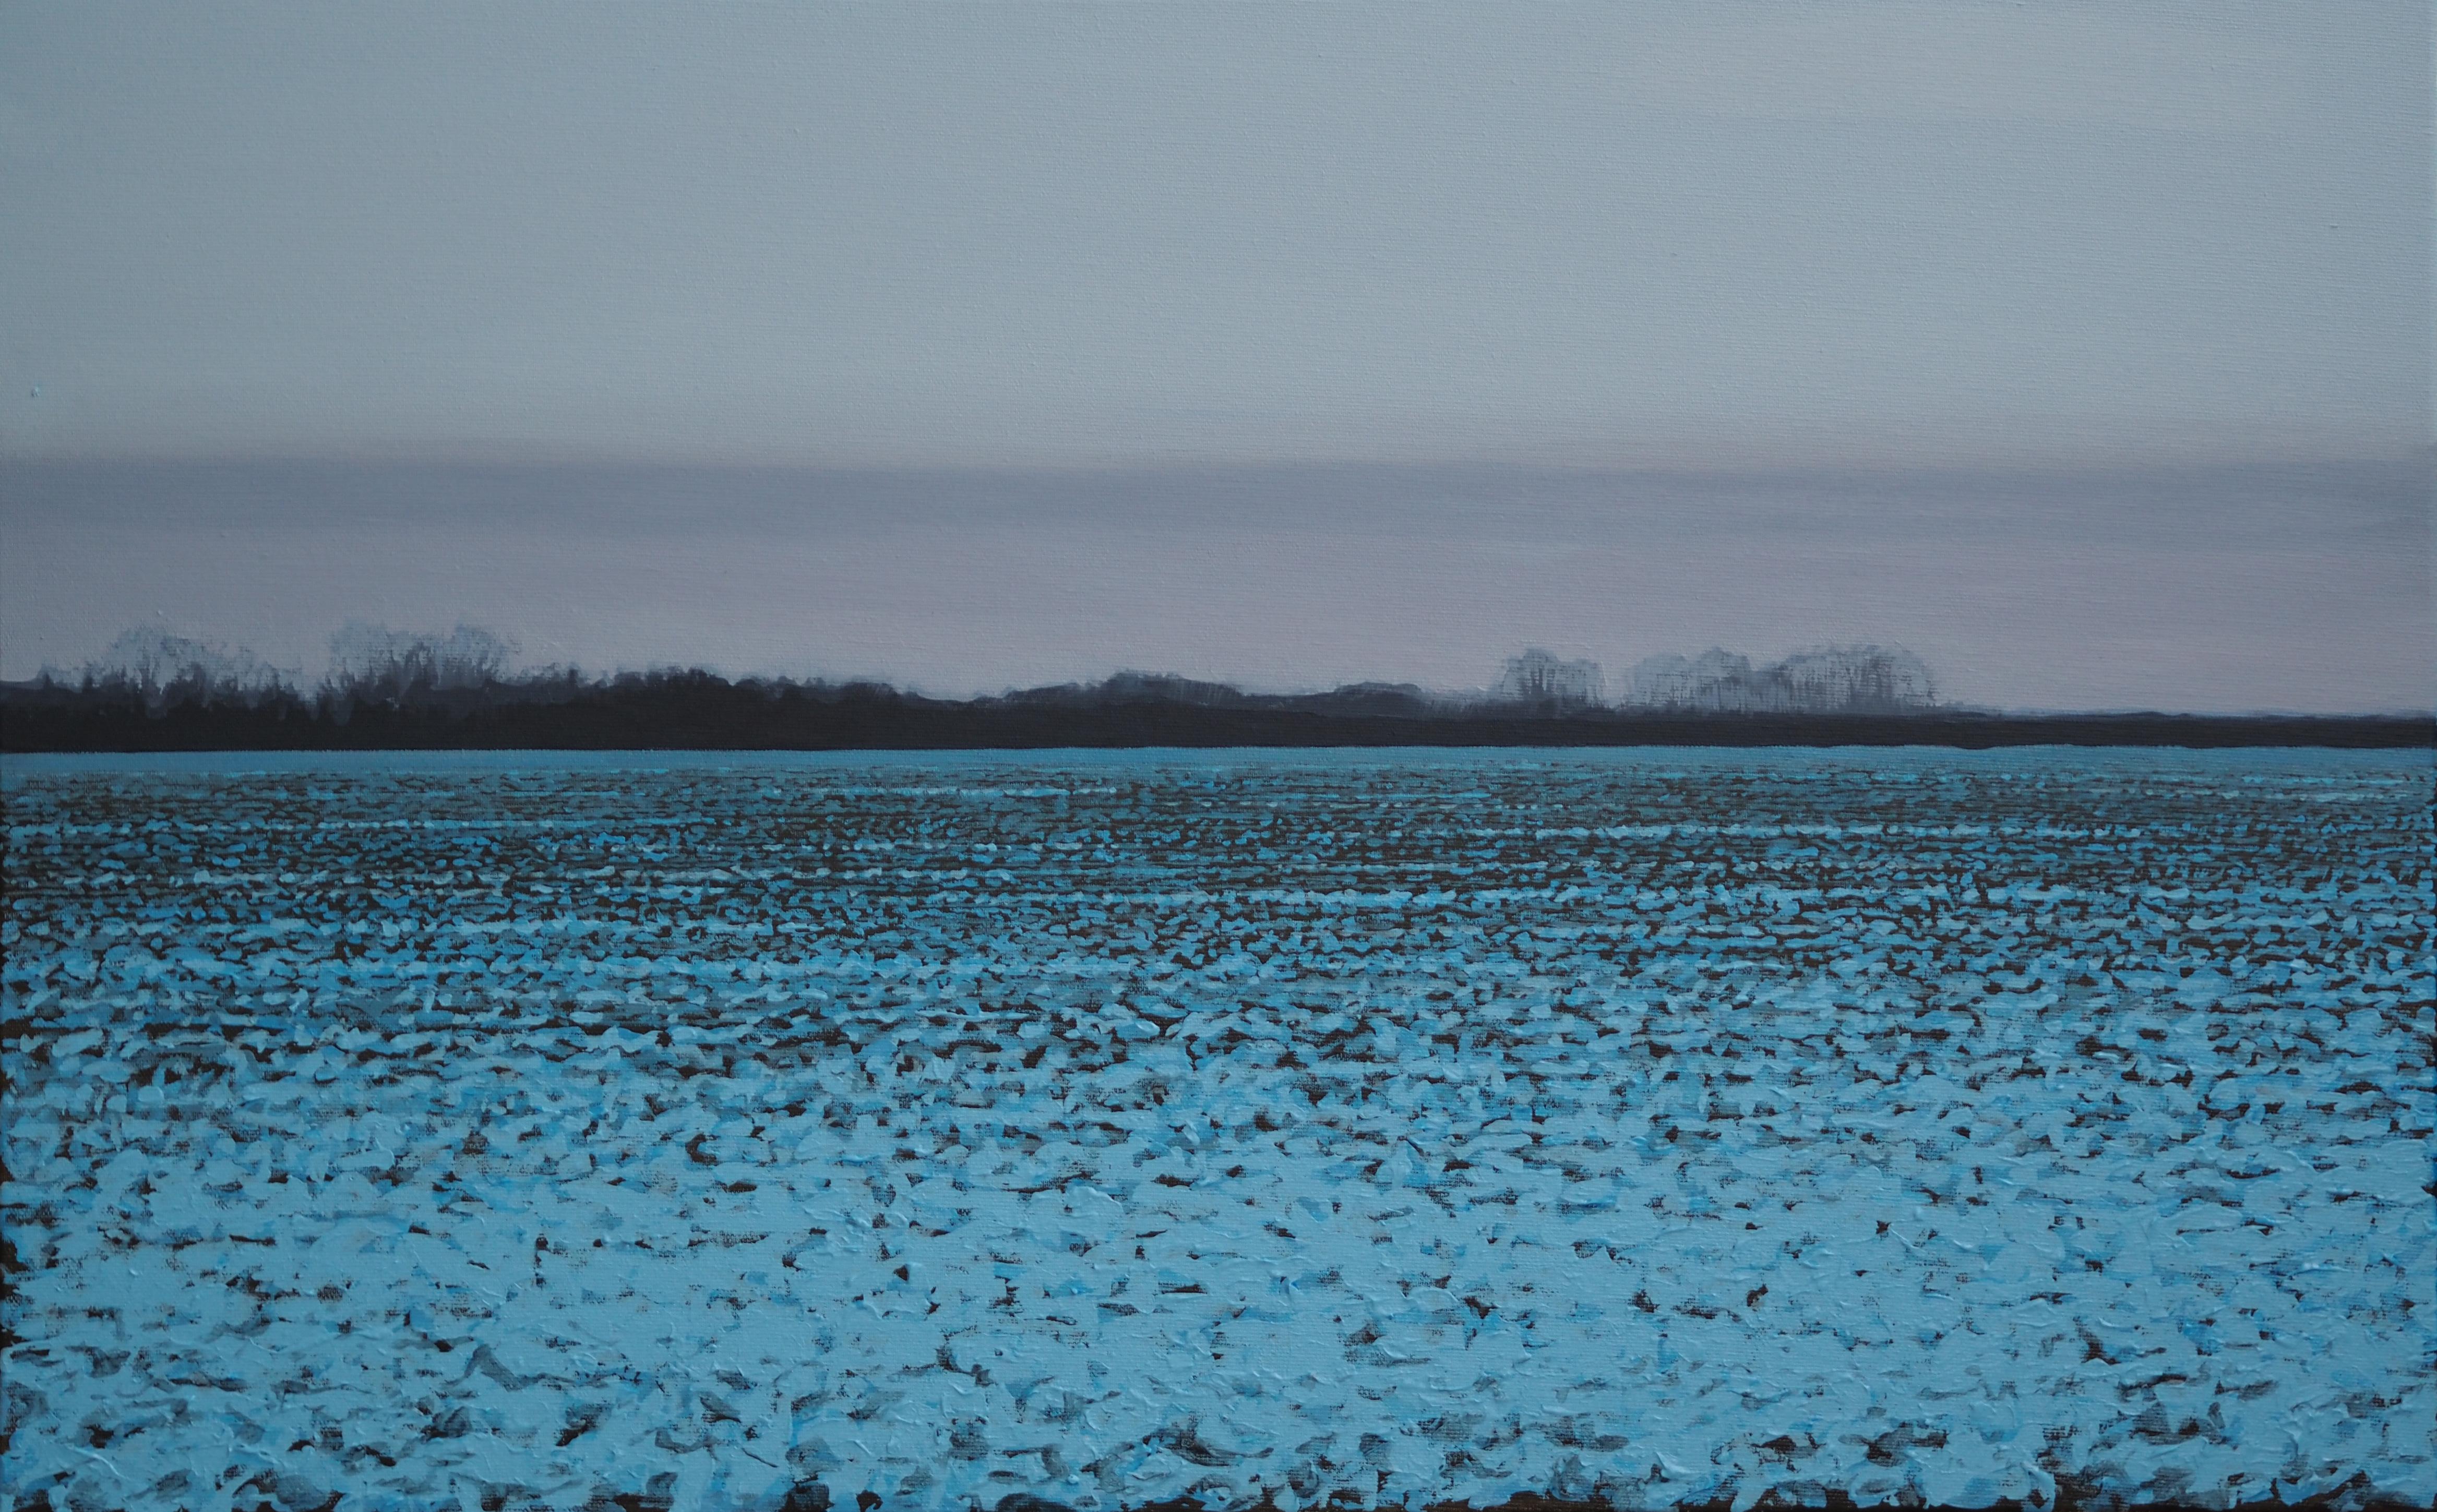 Grzegorz Wójcik Landscape Painting - WINTER LANDSCAPE 5 - Contemporary Atmospheric Landscape,  Modern Nature Painting